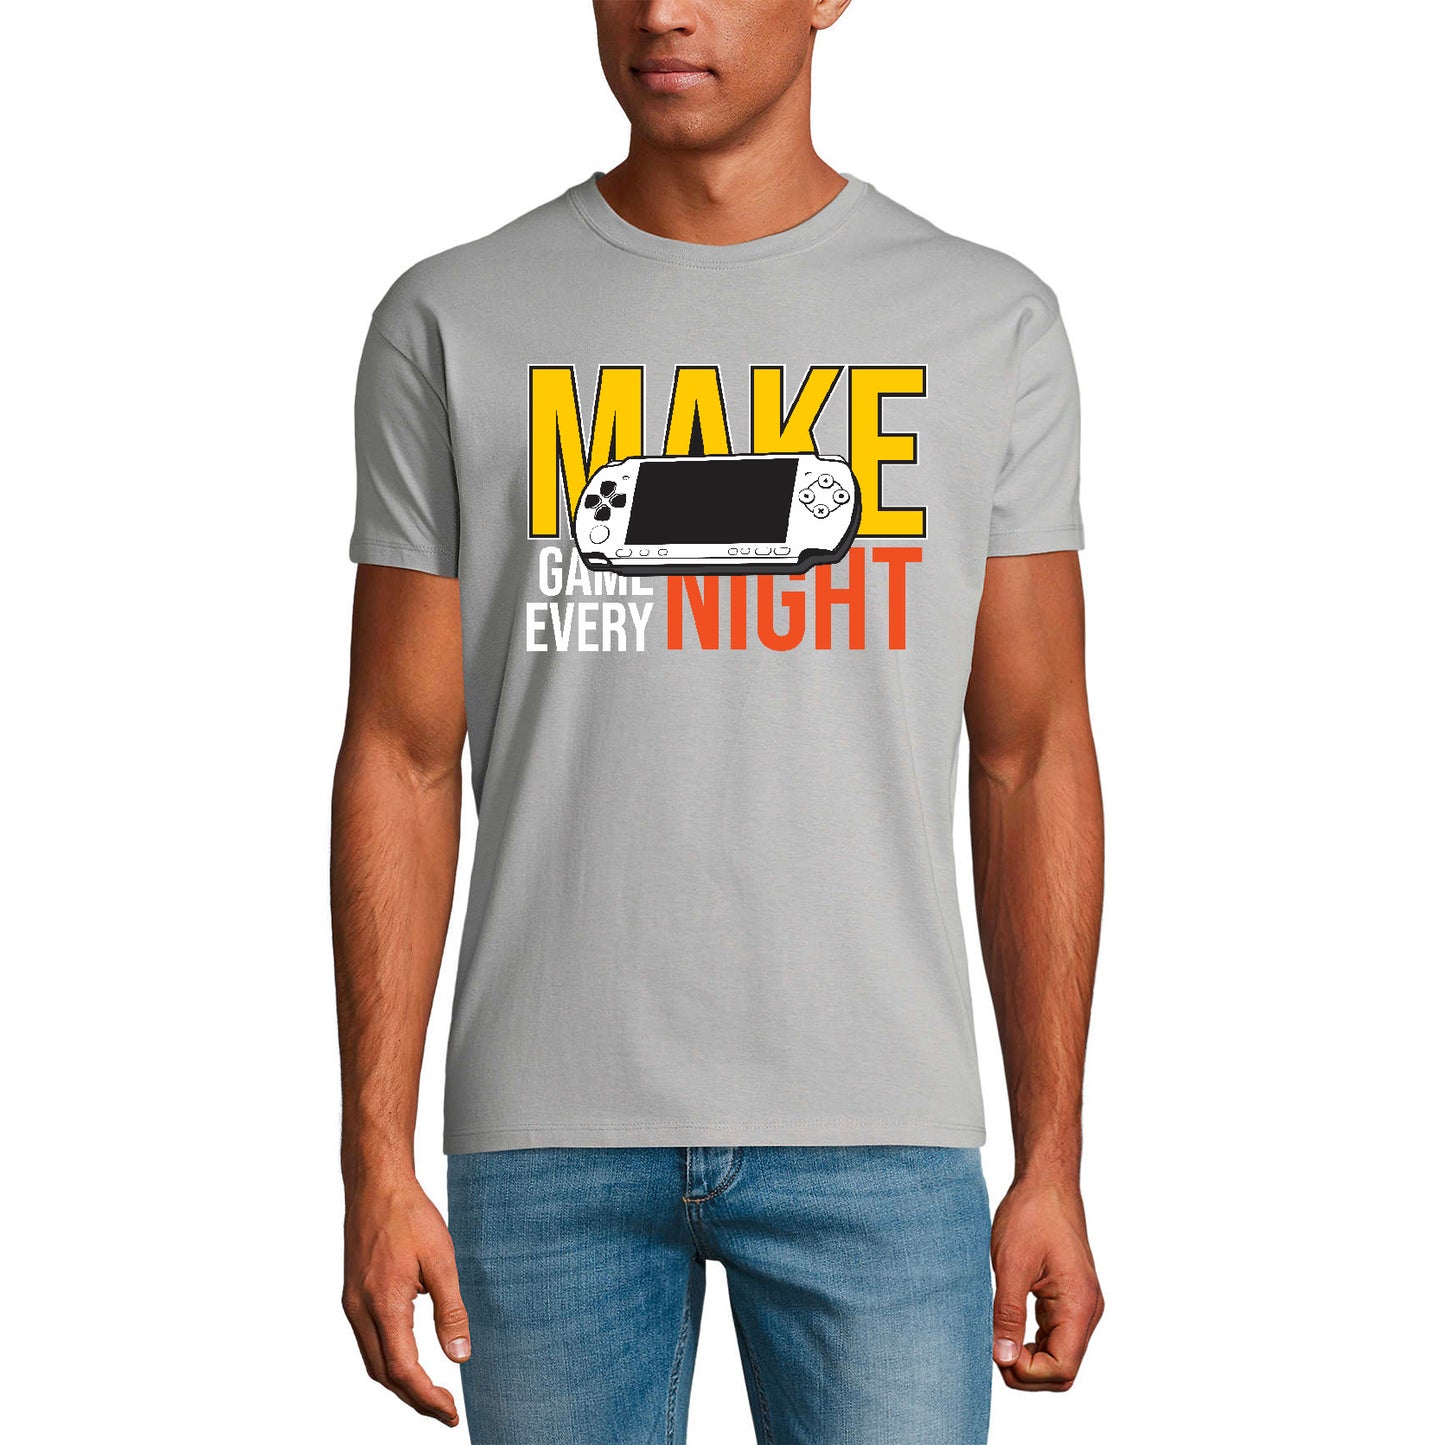 ULTRABASIC Men's Gaming T-Shirt Make Game Every Night - Gamer Tee Shirt